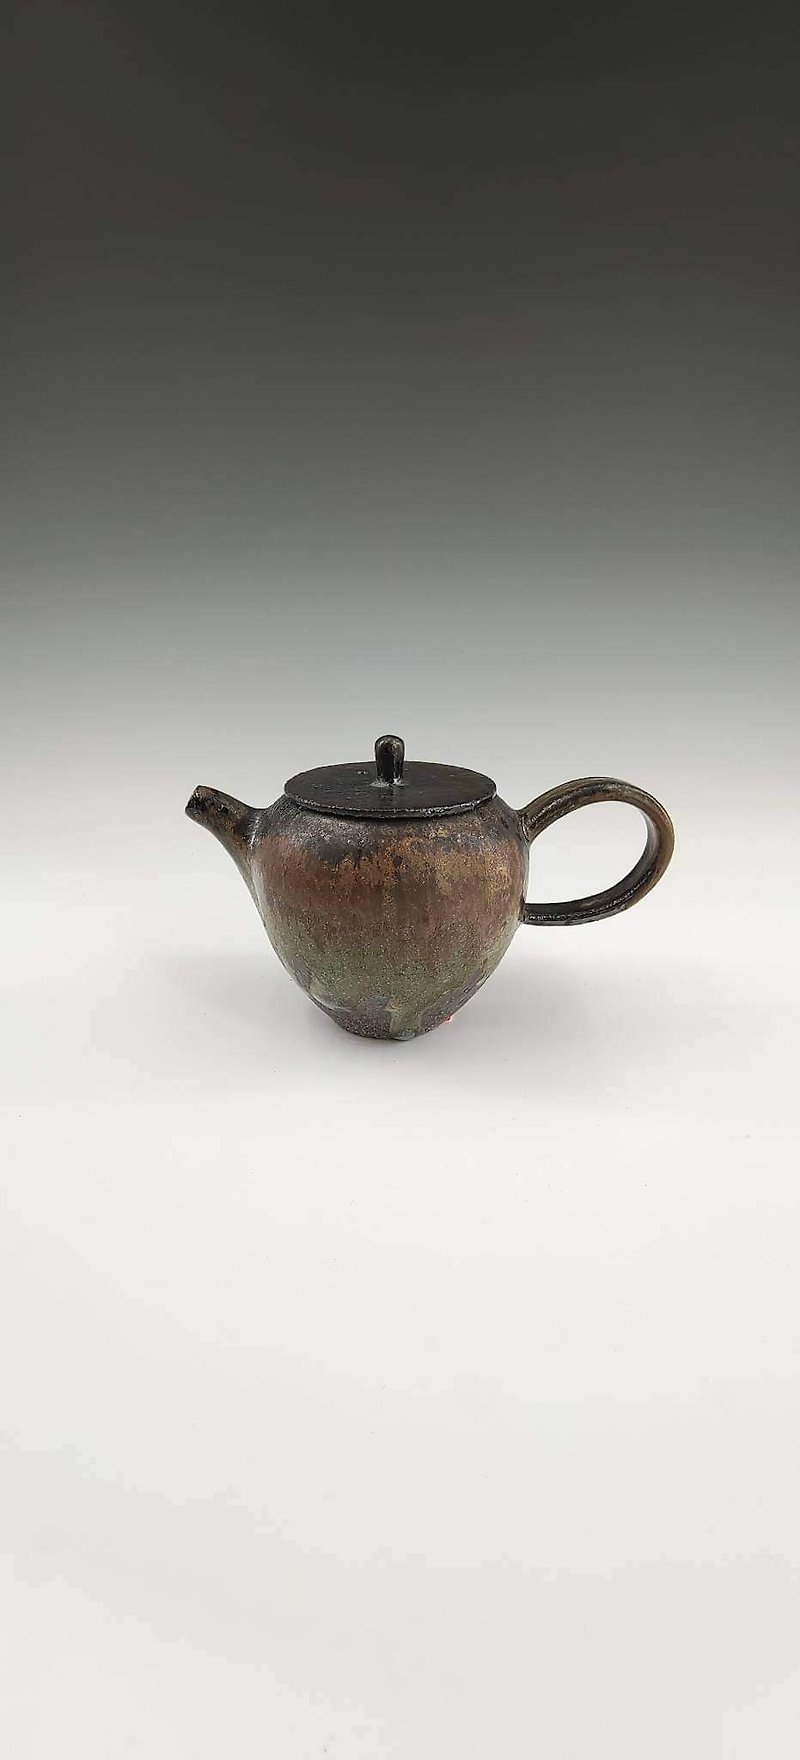 薪純釉鍋 - 急須・ティーカップ - 陶器 